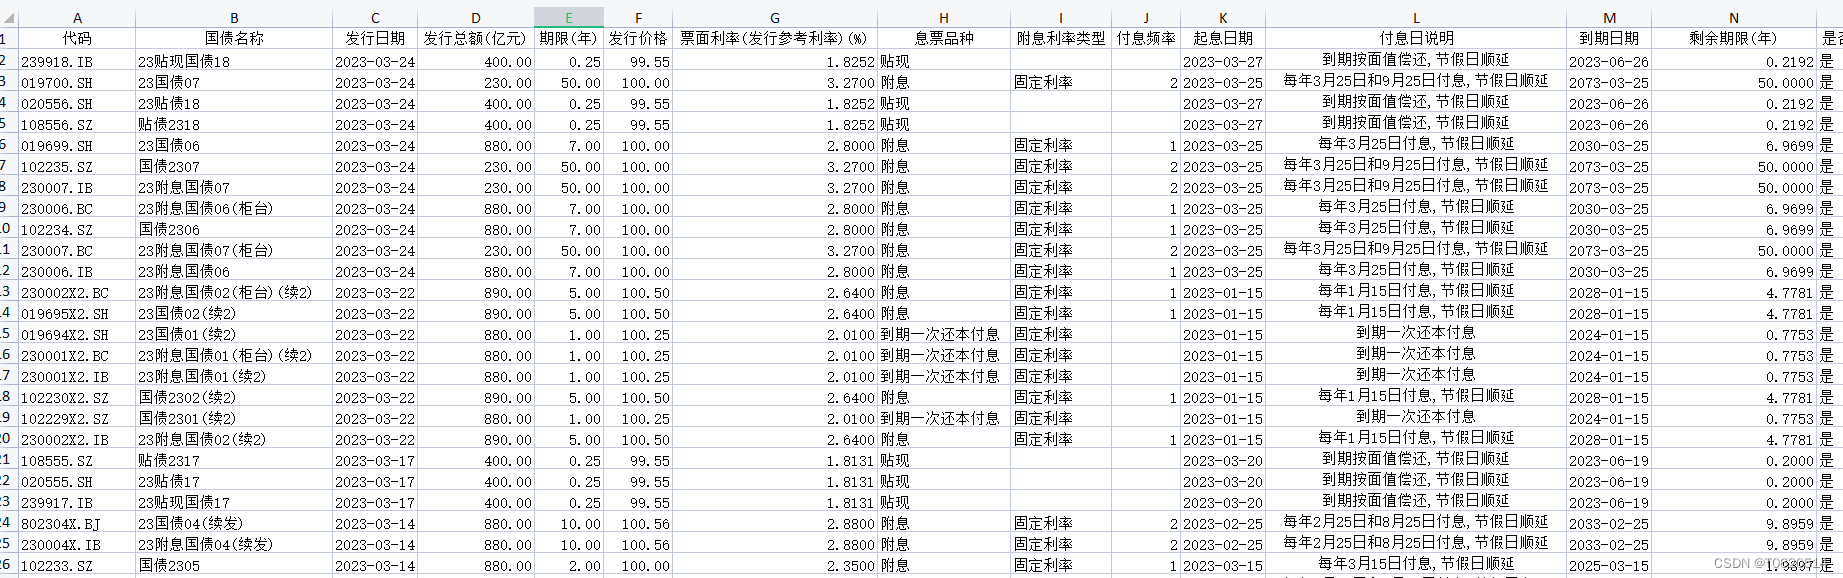 中国国债发行数据集（2002-2023）